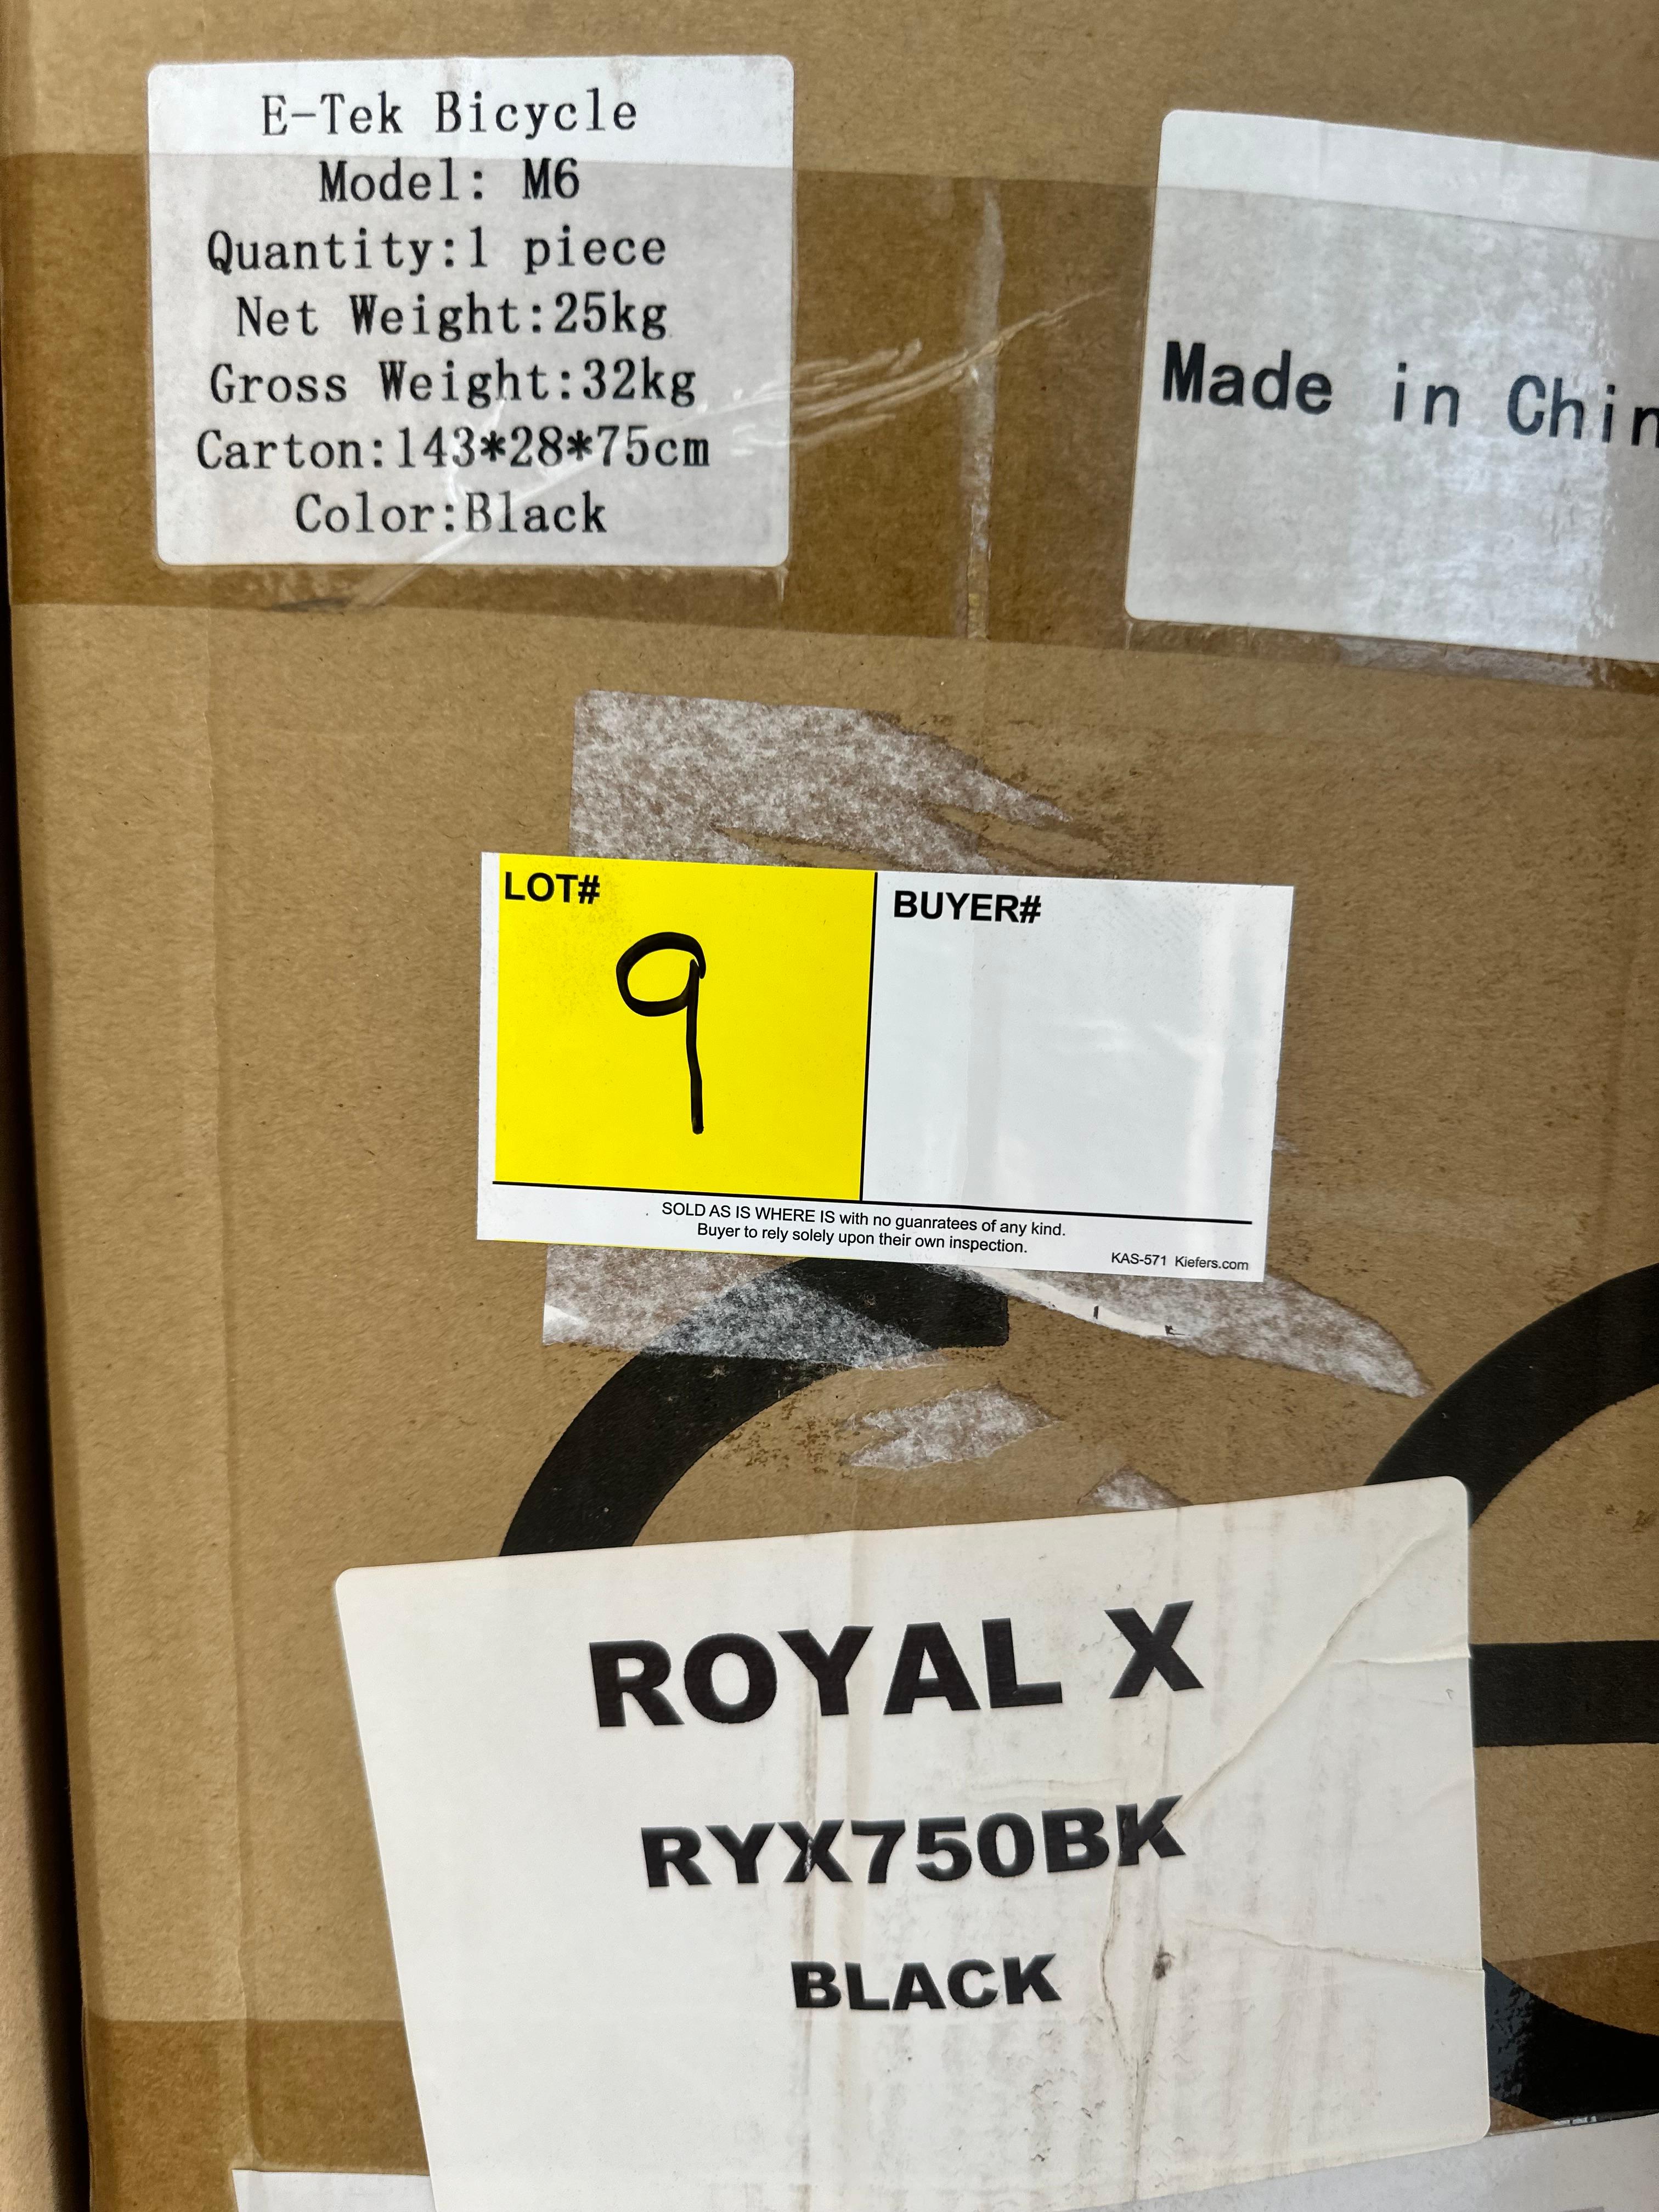 E-TEK ROYAL X, MODEL: RYX750BK, COLOR: BLACK